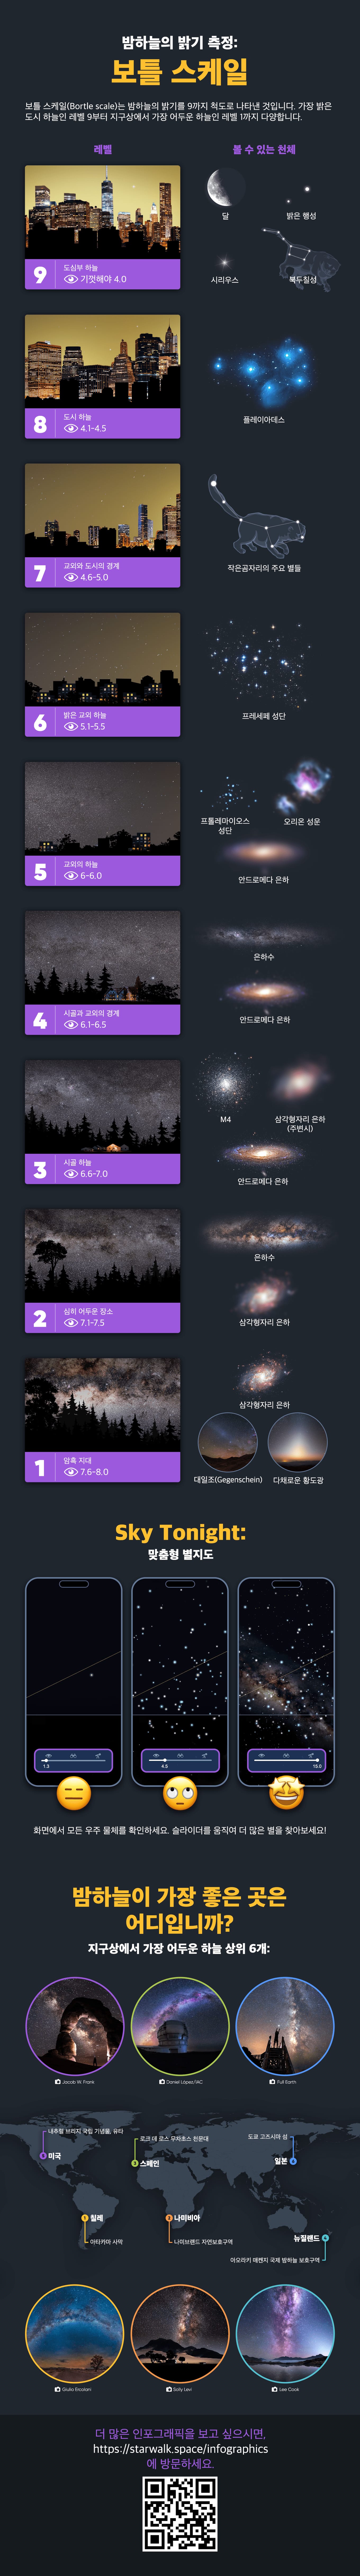 밤하늘의 밝기 측정: 보틀 스케일